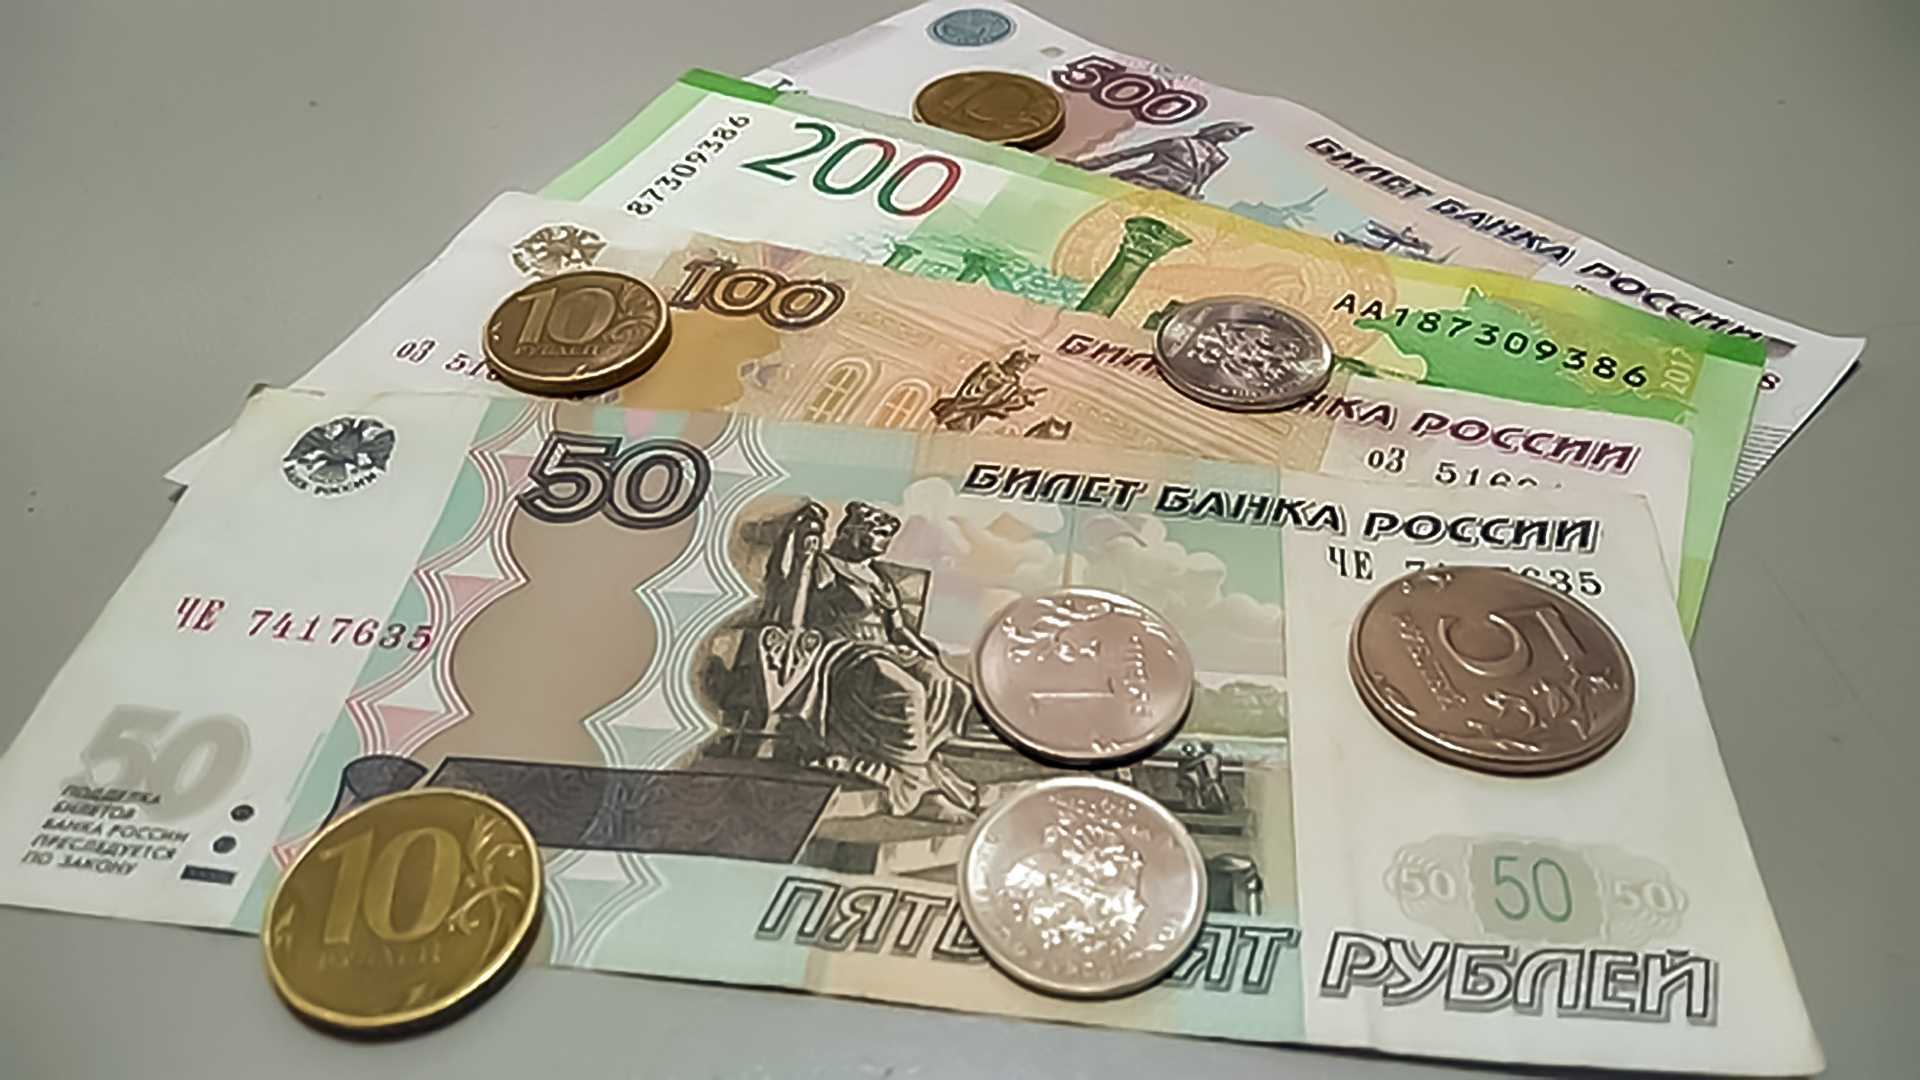 200 000 рублей в долг. 500 Рублей льготы. Перевёл 100 руб мошеннику.